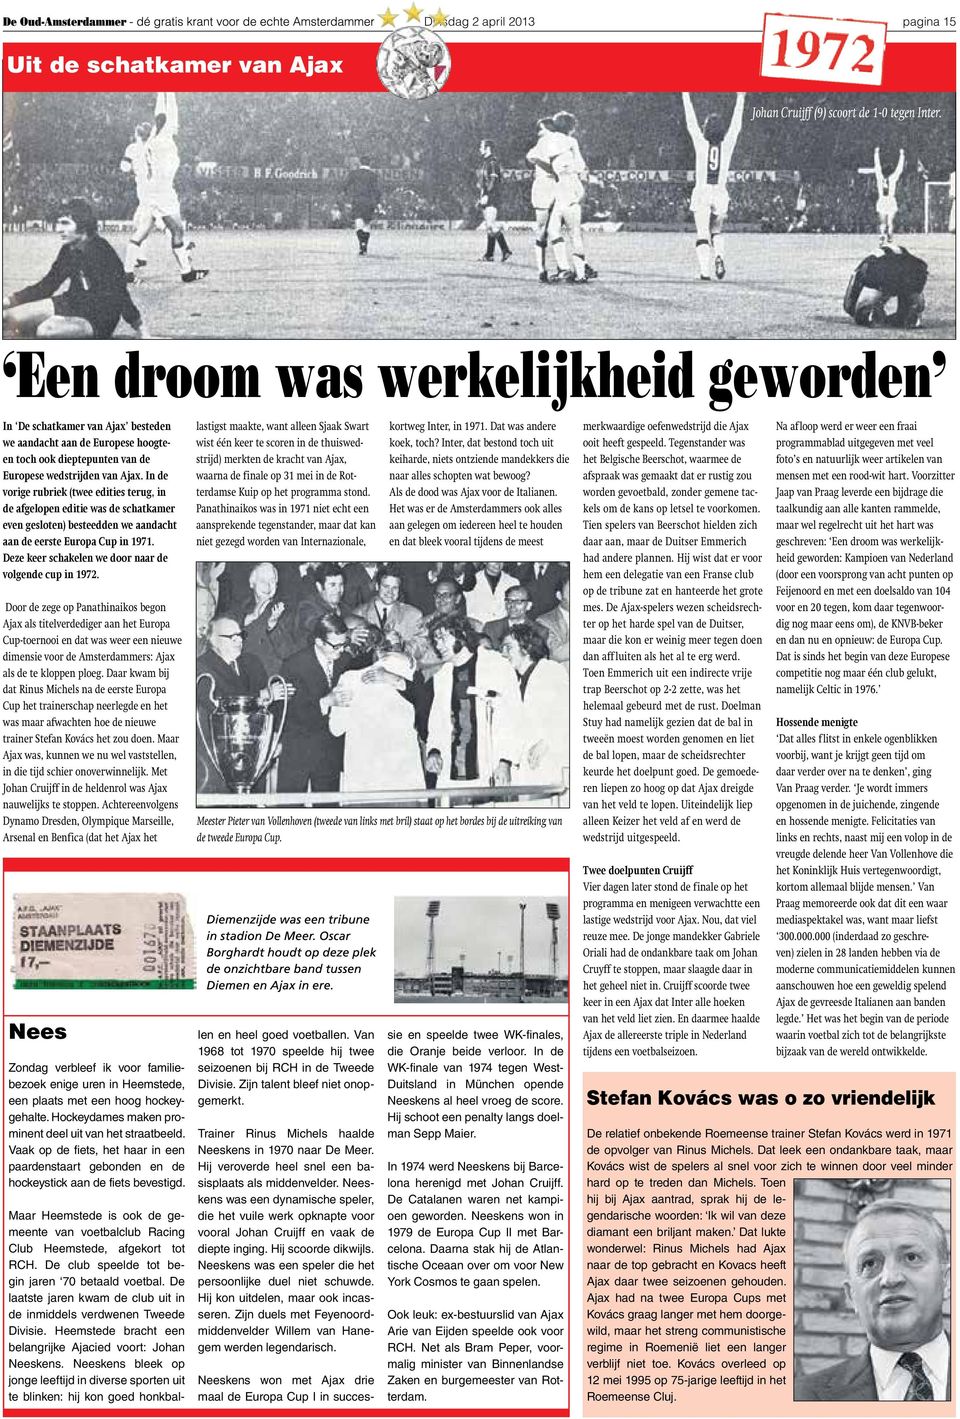 In de vorige rubriek (twee edities terug, in de afgelopen editie was de schatkamer even gesloten) besteedden we aandacht aan de eerste Europa Cup in 1971.